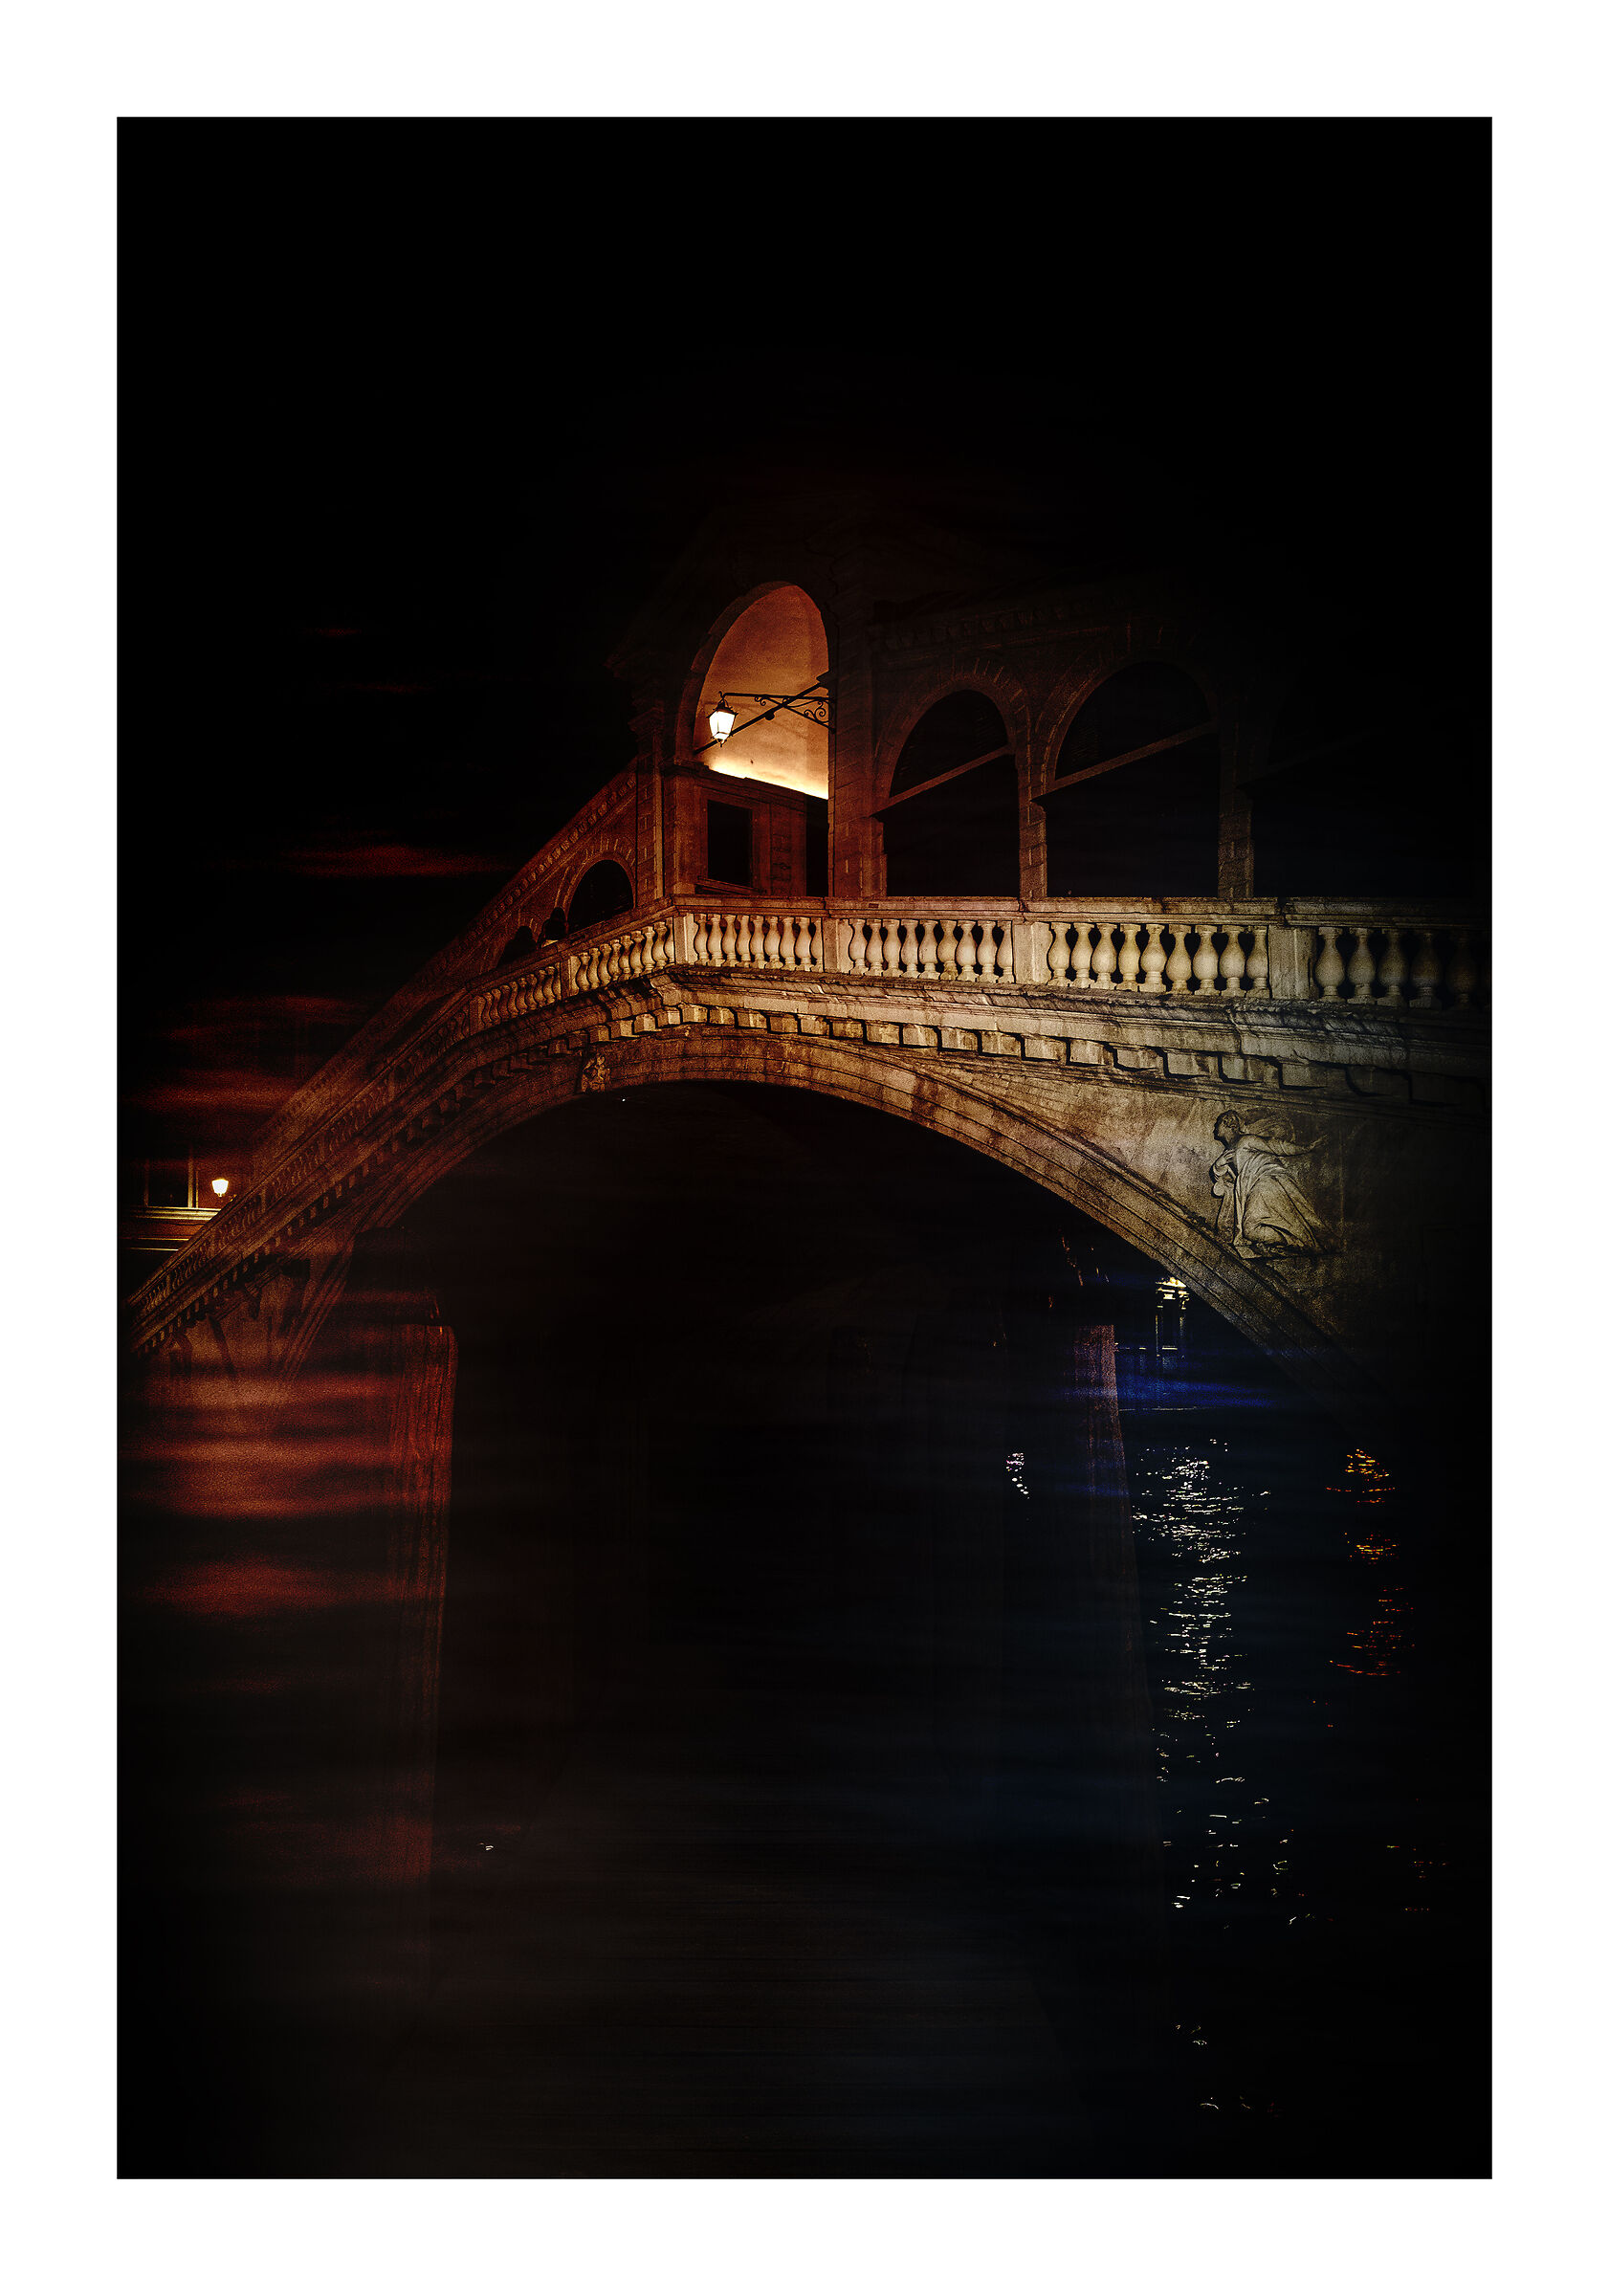 Venice... the Rialto Bridge ... At night...